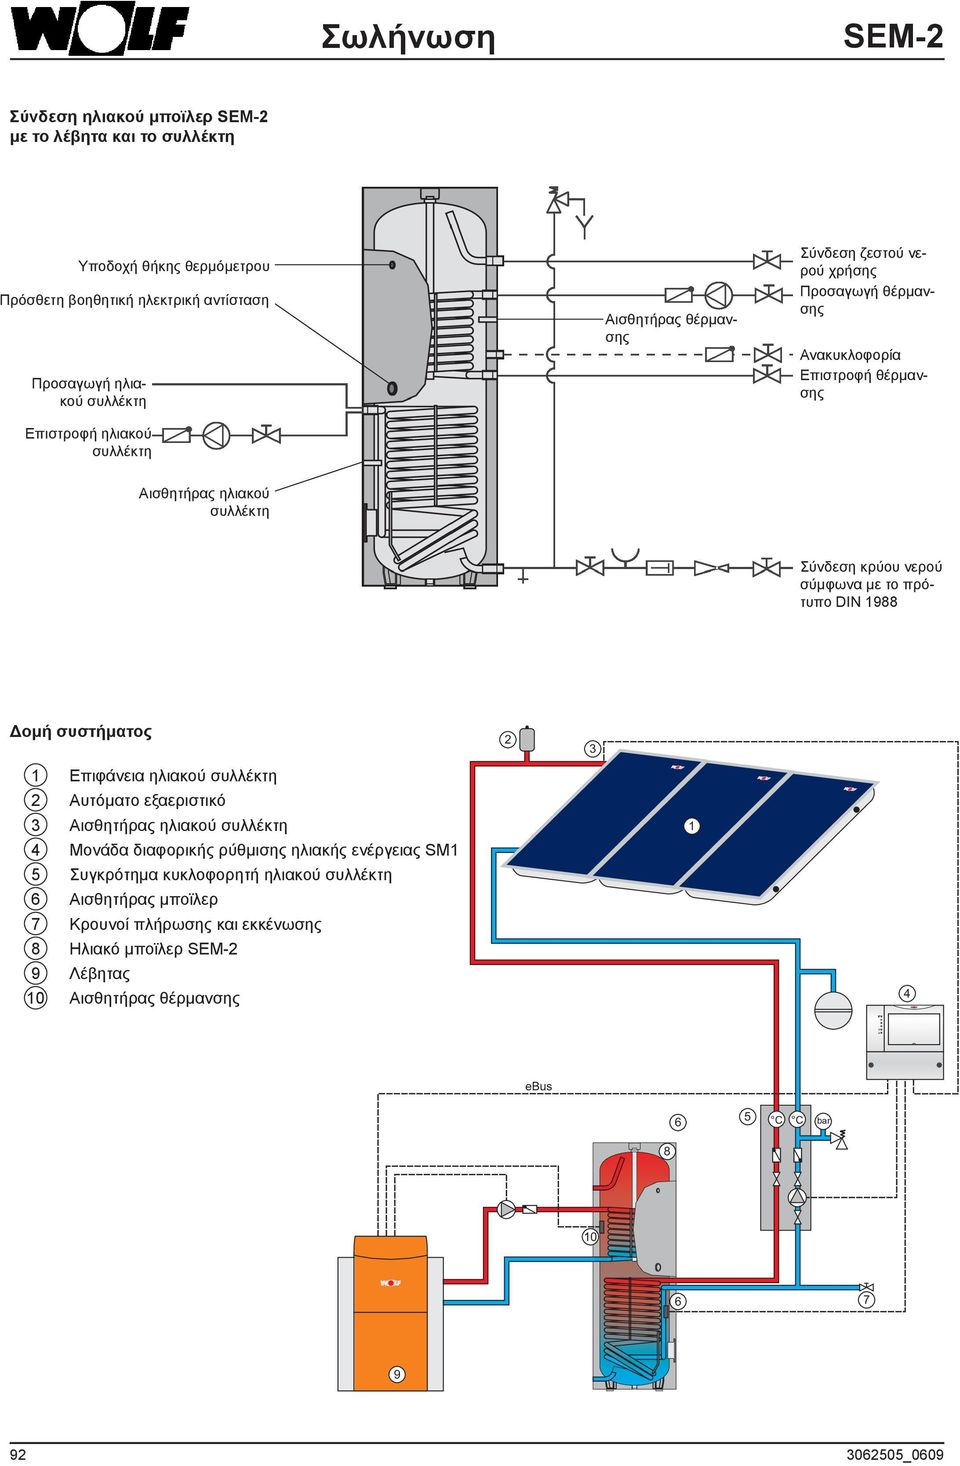 πρότυπο DIN 1988 Δομή συστήματος 1 Επιφάνεια ηλιακού συλλέκτη 2 Αυτόματο εξαεριστικό 3 Αισθητήρας ηλιακού συλλέκτη 4 Μονάδα διαφορικής ρύθμισης ηλιακής ενέργειας SM1 5